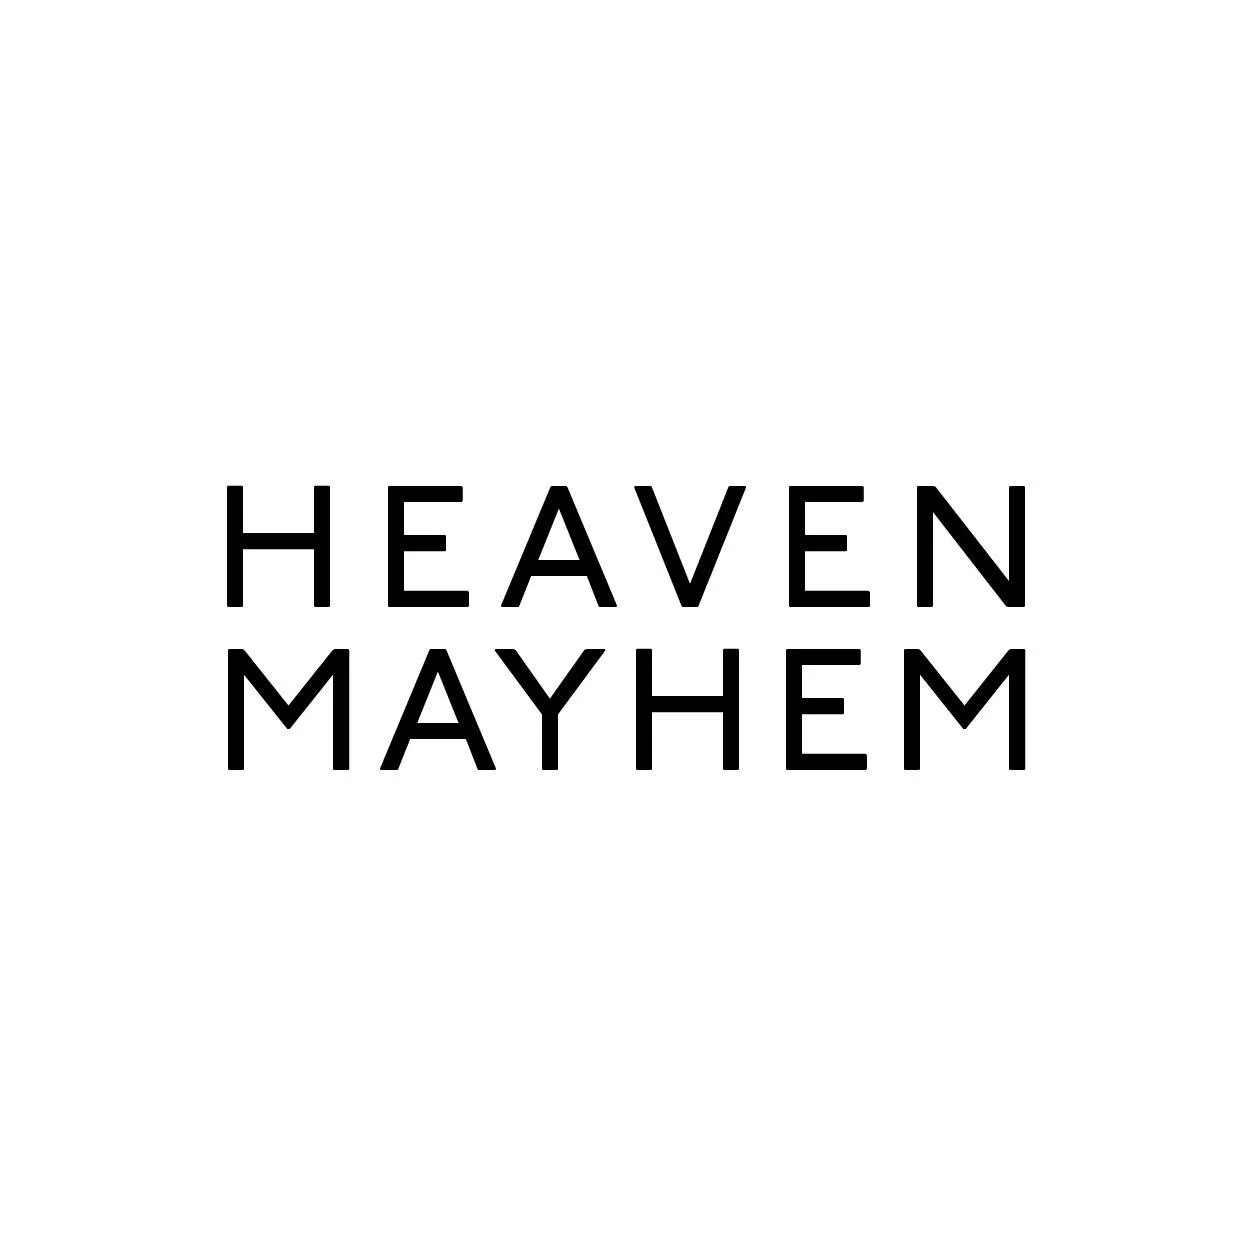 Heavenmayhem